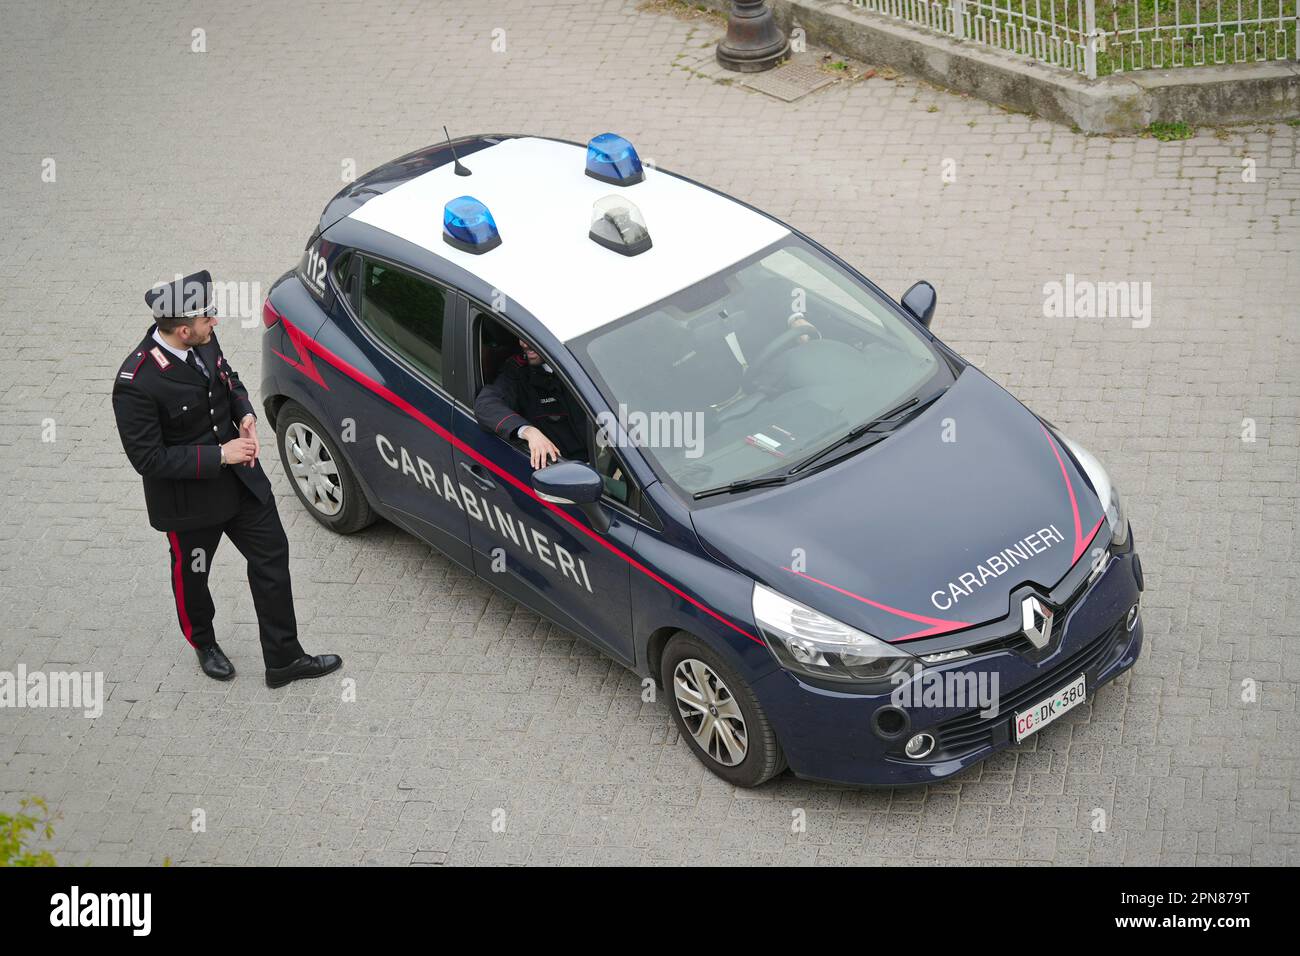 Vue de dessus de la voiture de Carabinieri arrêté pour un contrôle dans une rue de village. Milan, Italie - avril 2023 Banque D'Images